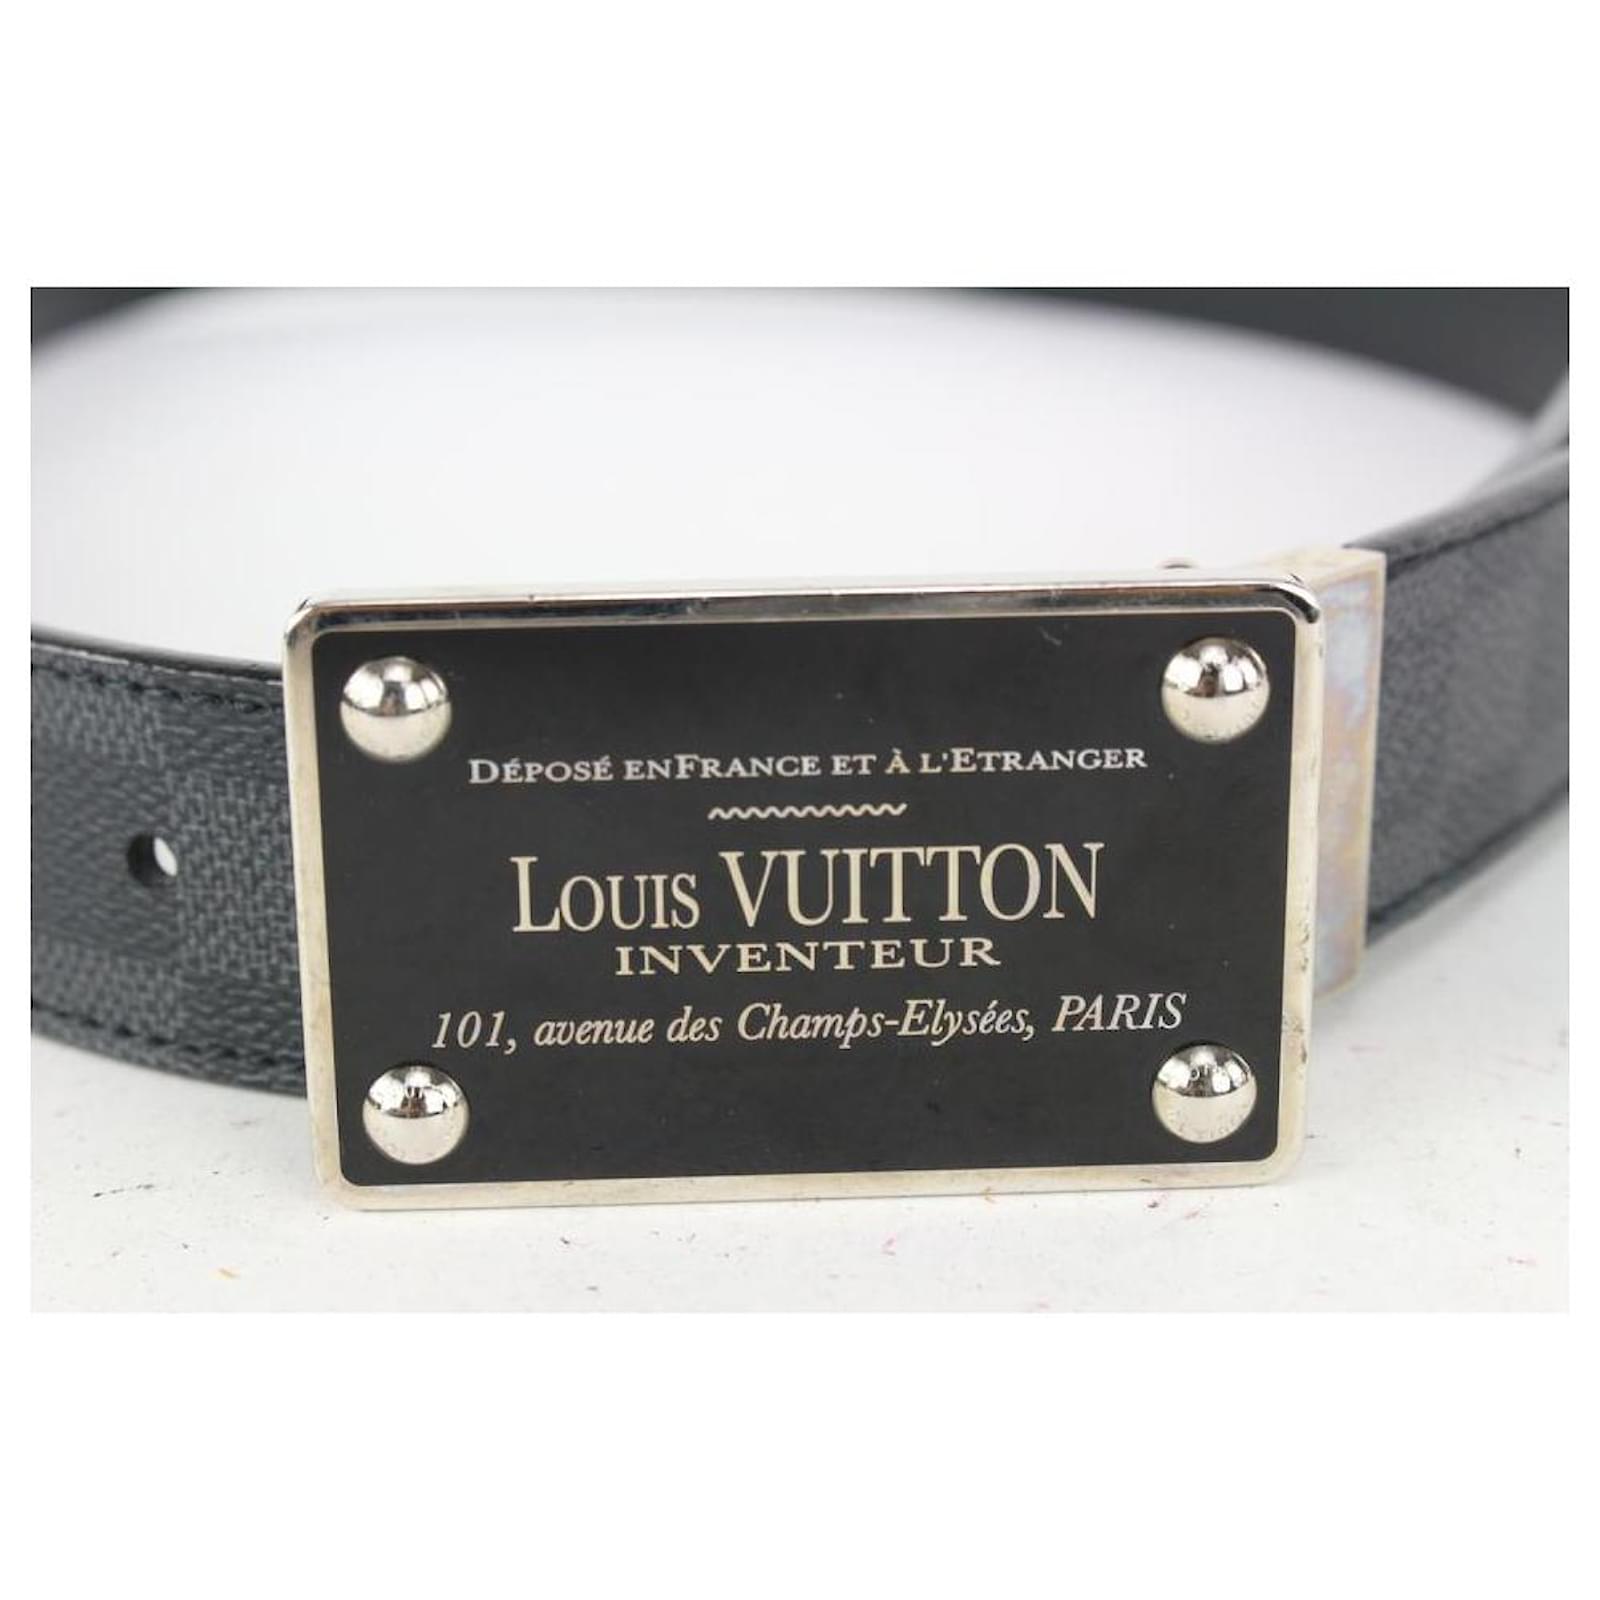 LOUIS VUITTON Monogram 40mm Inventeur Belt 95 38 122870